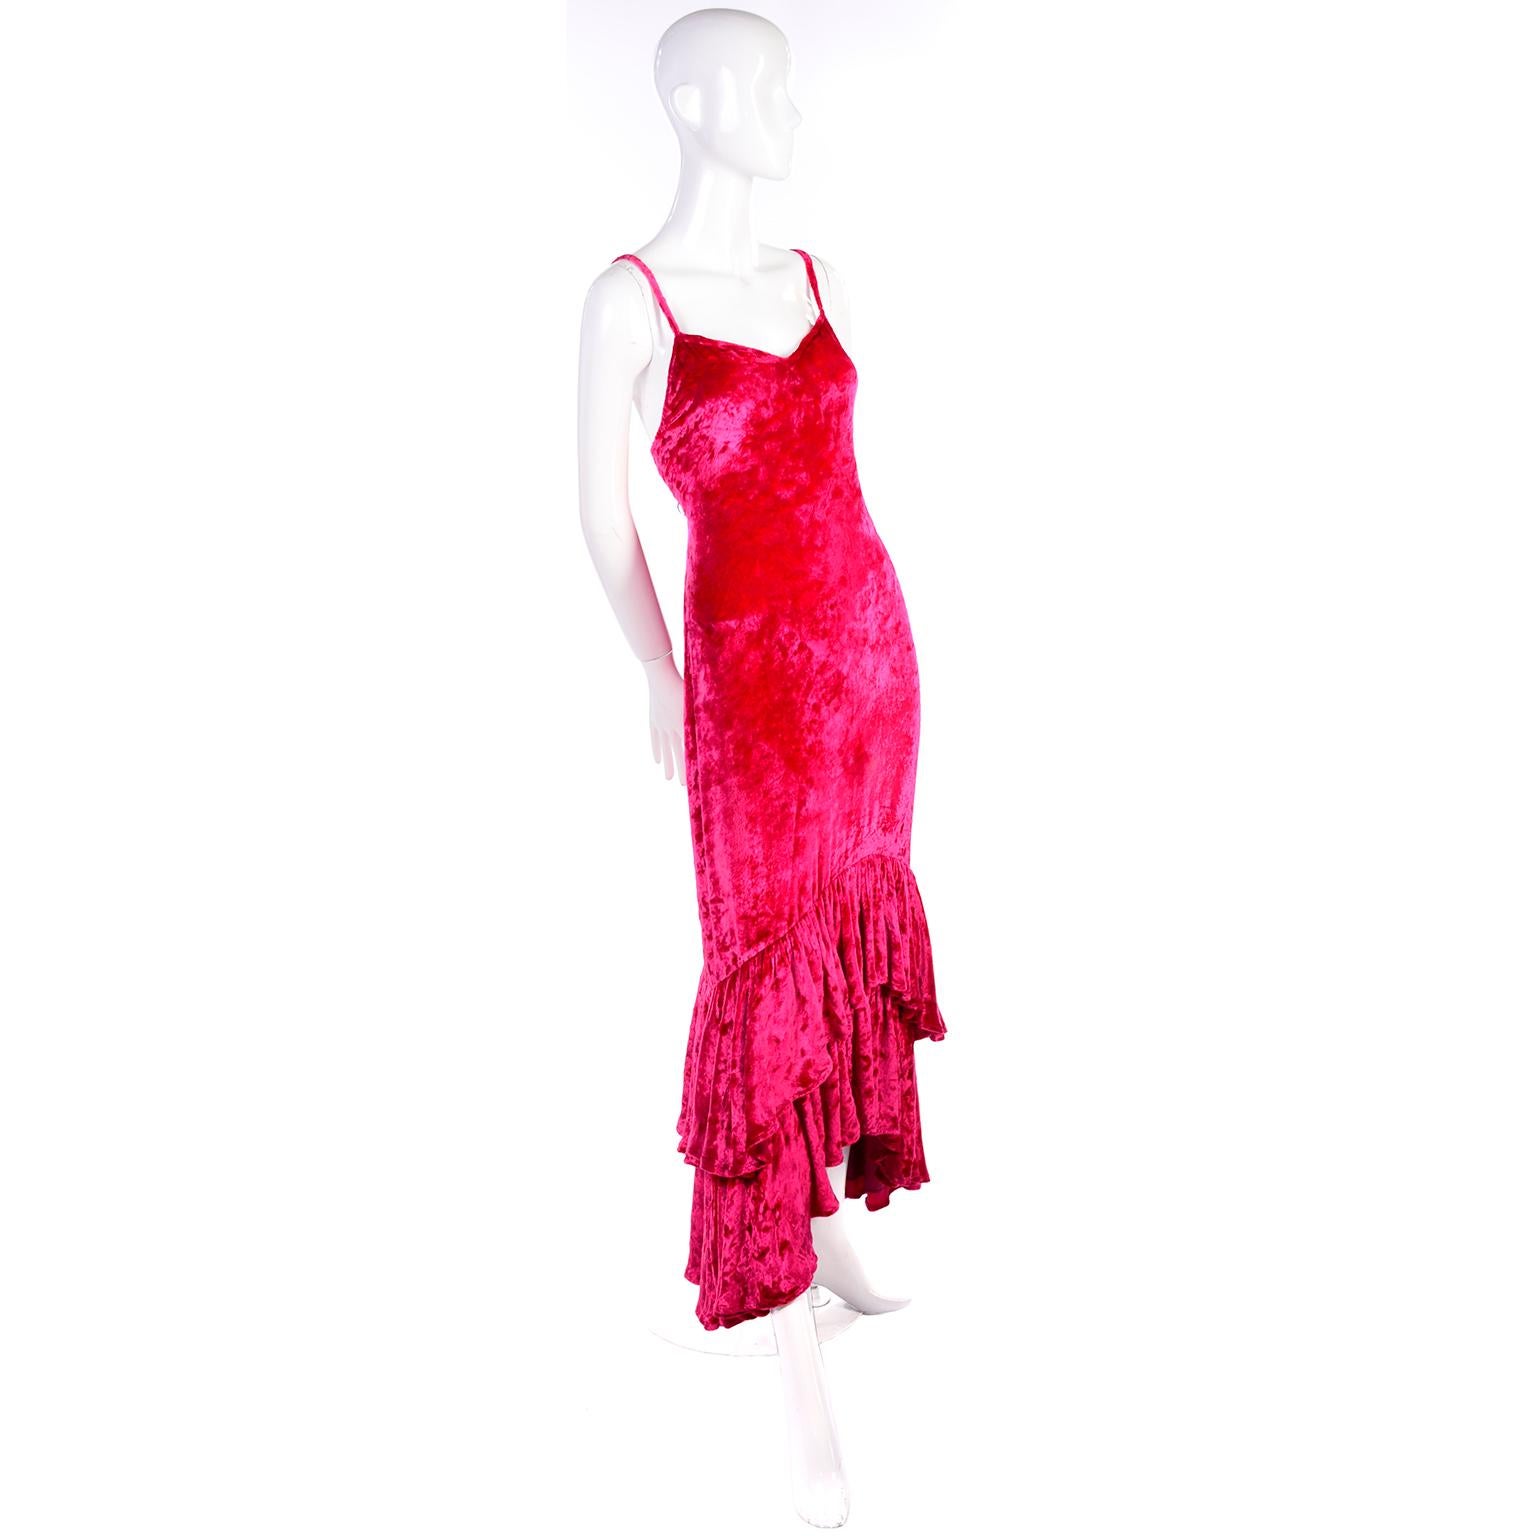 Dies ist eine wunderschöne Himbeere rosa zerknittert Samt Sonia Rykiel Vintage-Kleid mit einem einzigartigen doppellagigen gerüscht hoch zu niedrig Saum. Es hat Spaghetti-Träger und ist hinten mit samtbezogenen Knöpfen zu schließen. Es hat einen